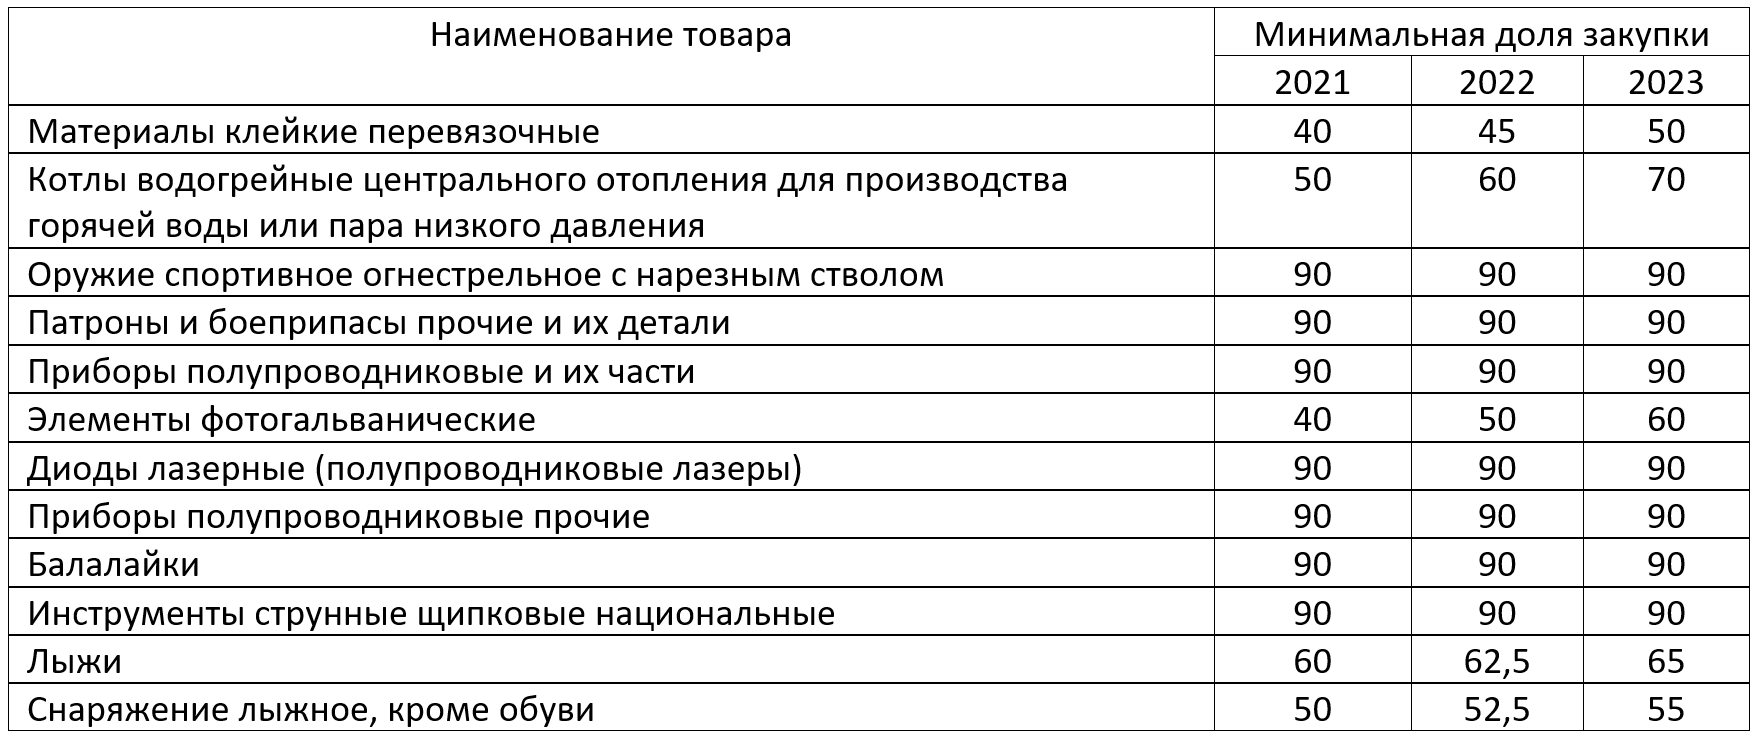 Отчет о доле закупок российских товаров